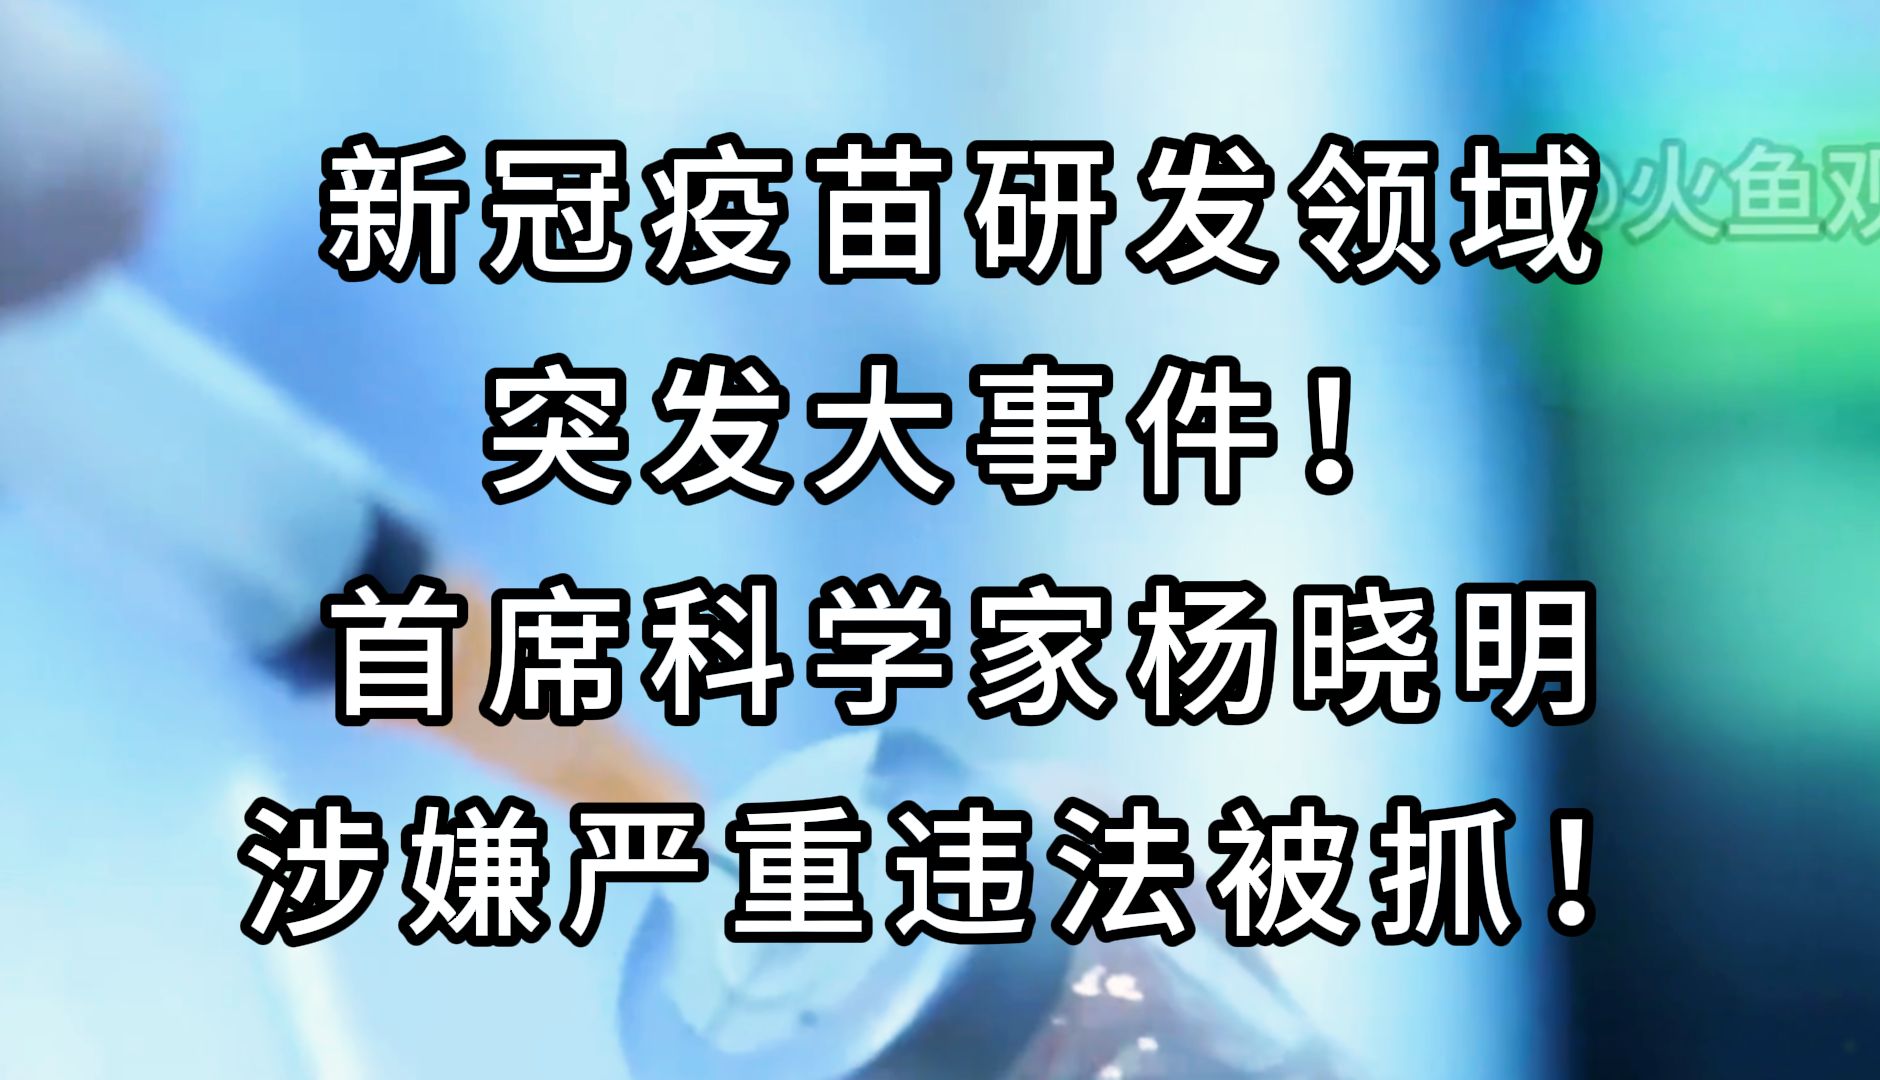 【特大消息—新冠疫苗之父】首席科学家杨晓明涉嫌严重违法被抓，疫苗安全疑云再起！ #热点新闻 #特大消息 #疫苗安全 #严重违法